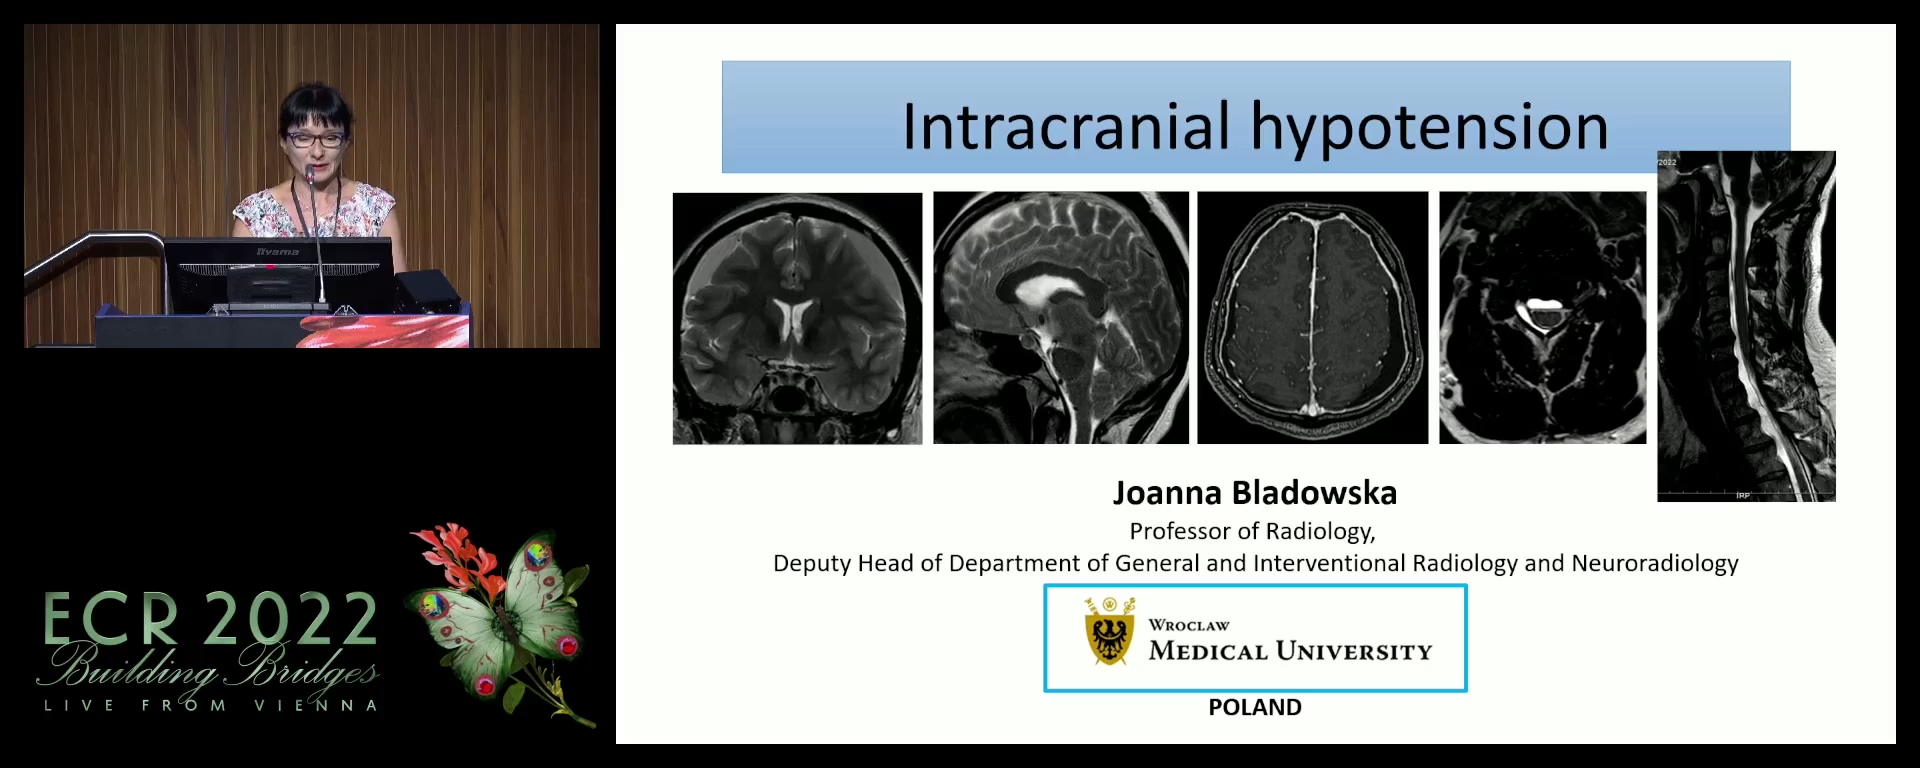 Intracranial hypotension